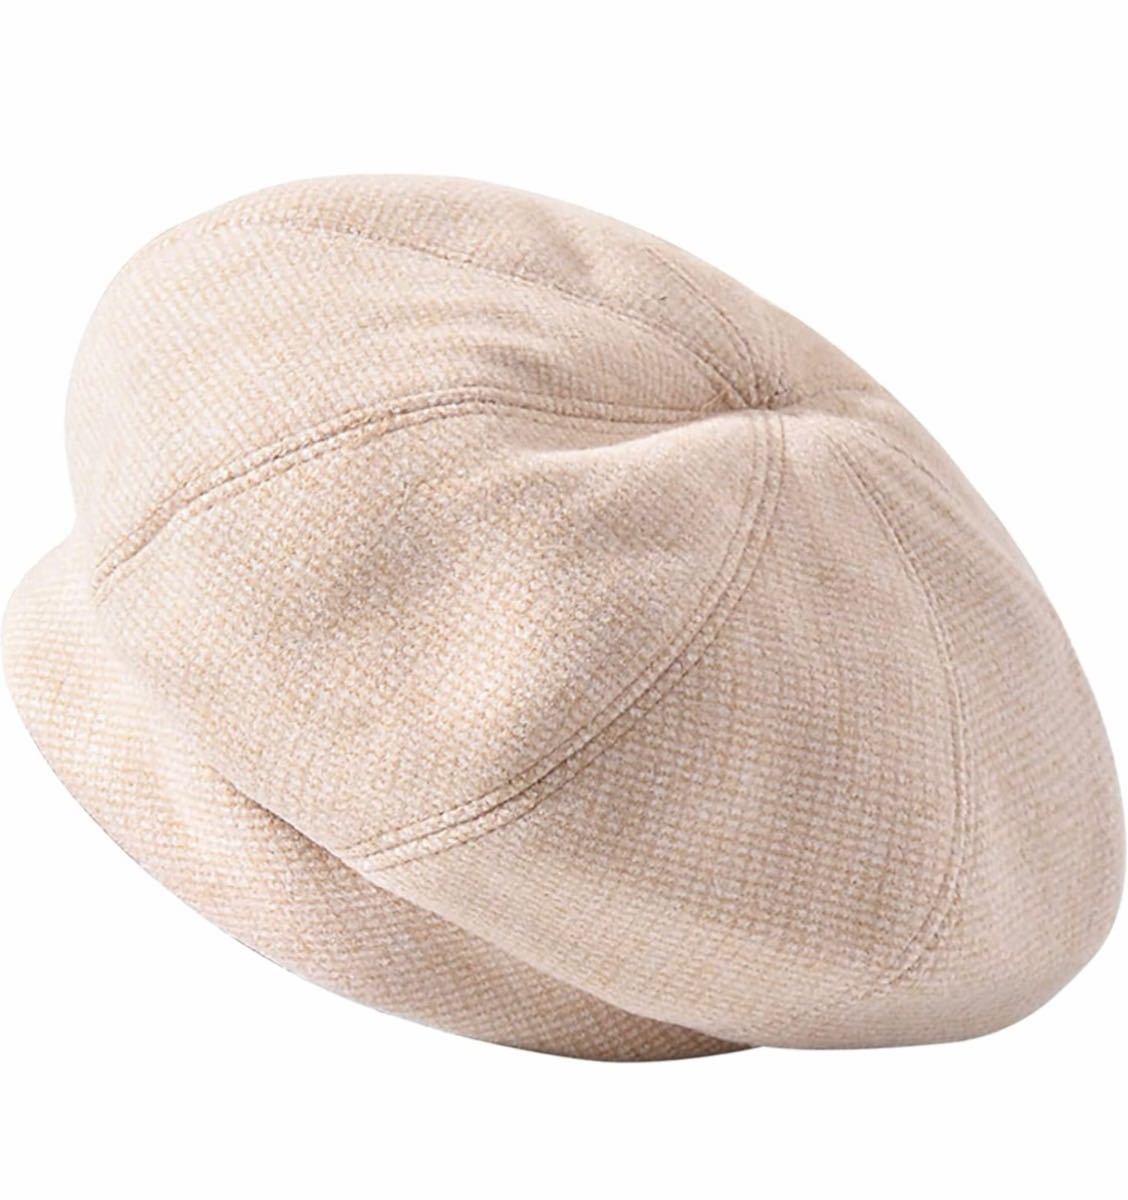 ニット帽 秋冬 ベレー帽 シンプル 無地 伸縮性 小顔効軽量 防寒 防風カーキ色